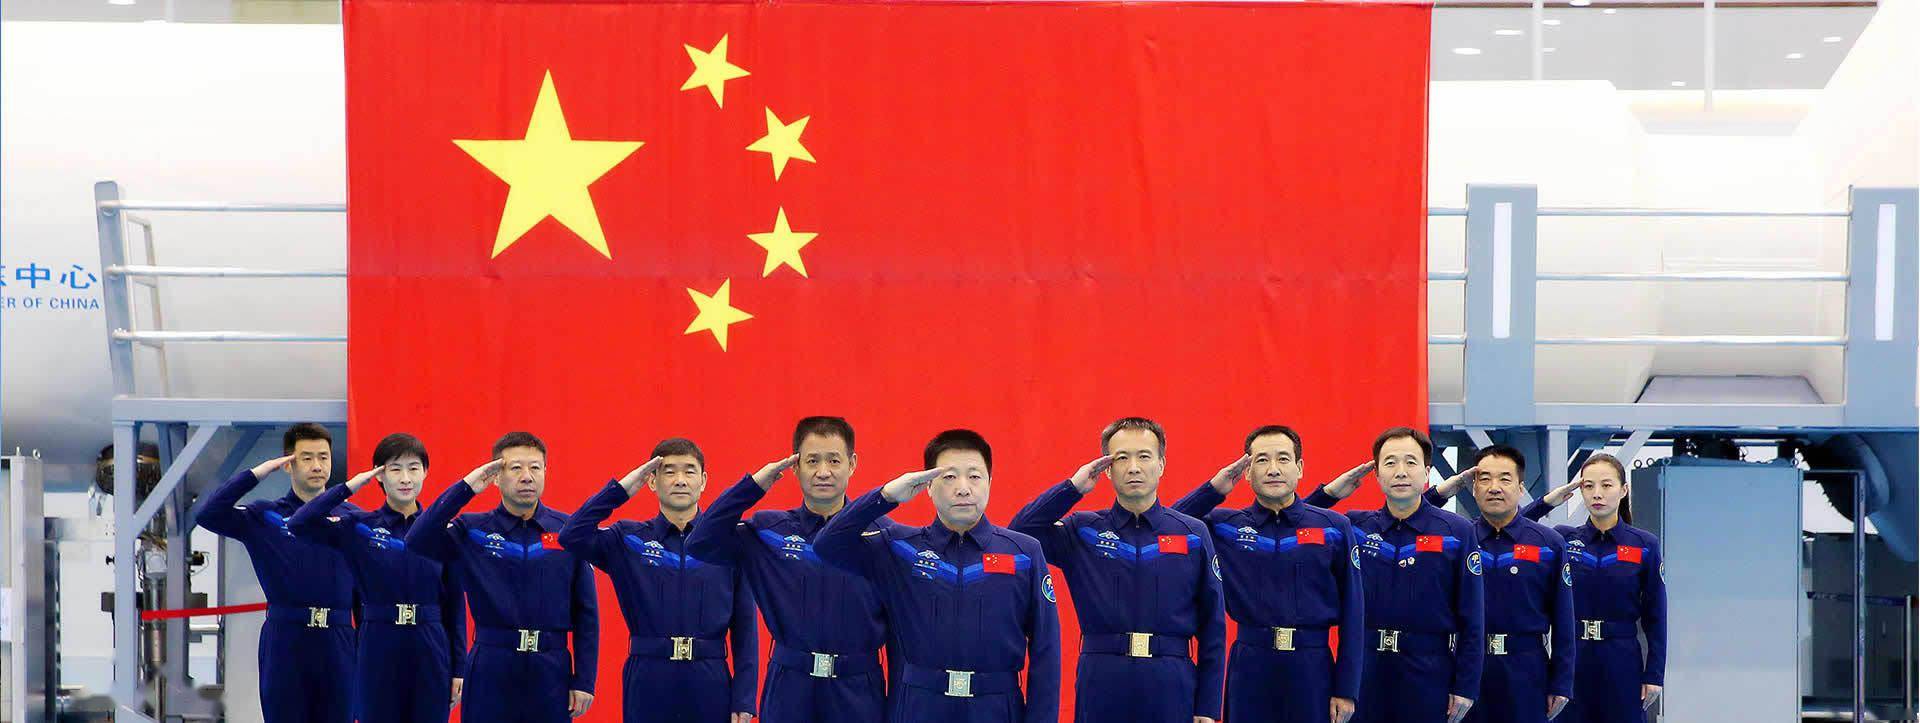 中国航天员:为国出征叩苍穹